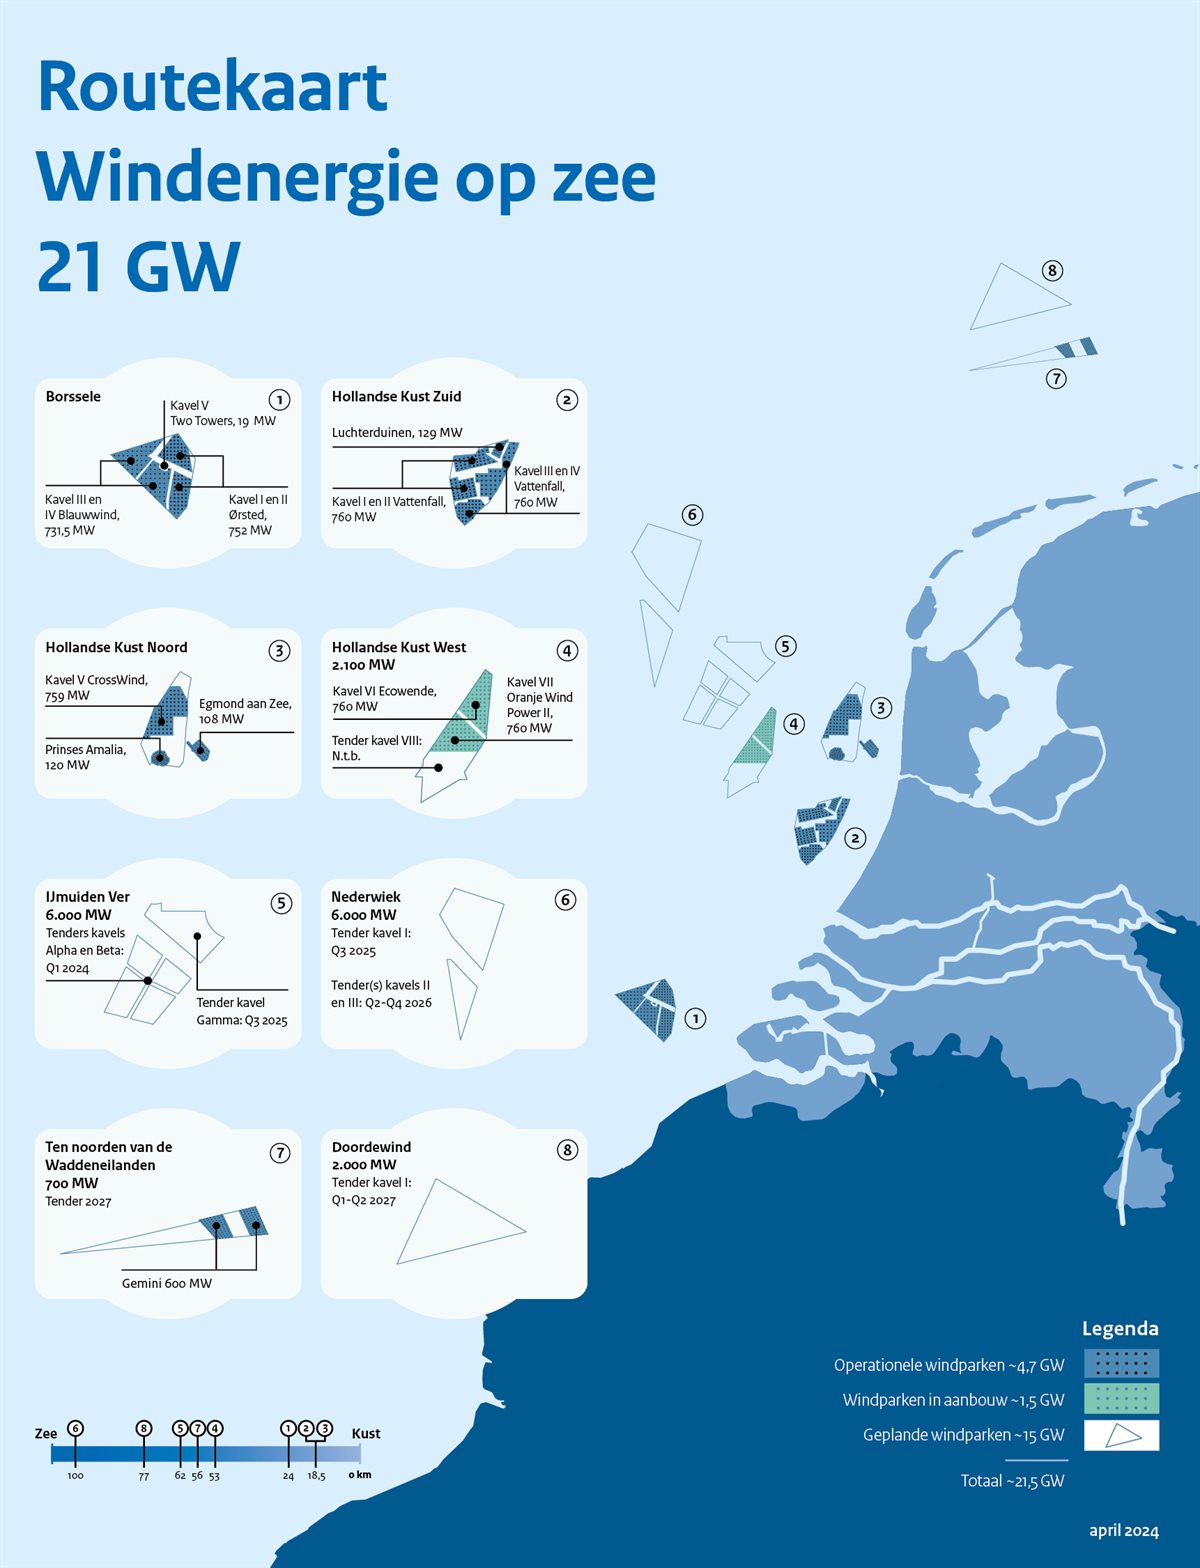 Routekaart windenergie op zee april 2024